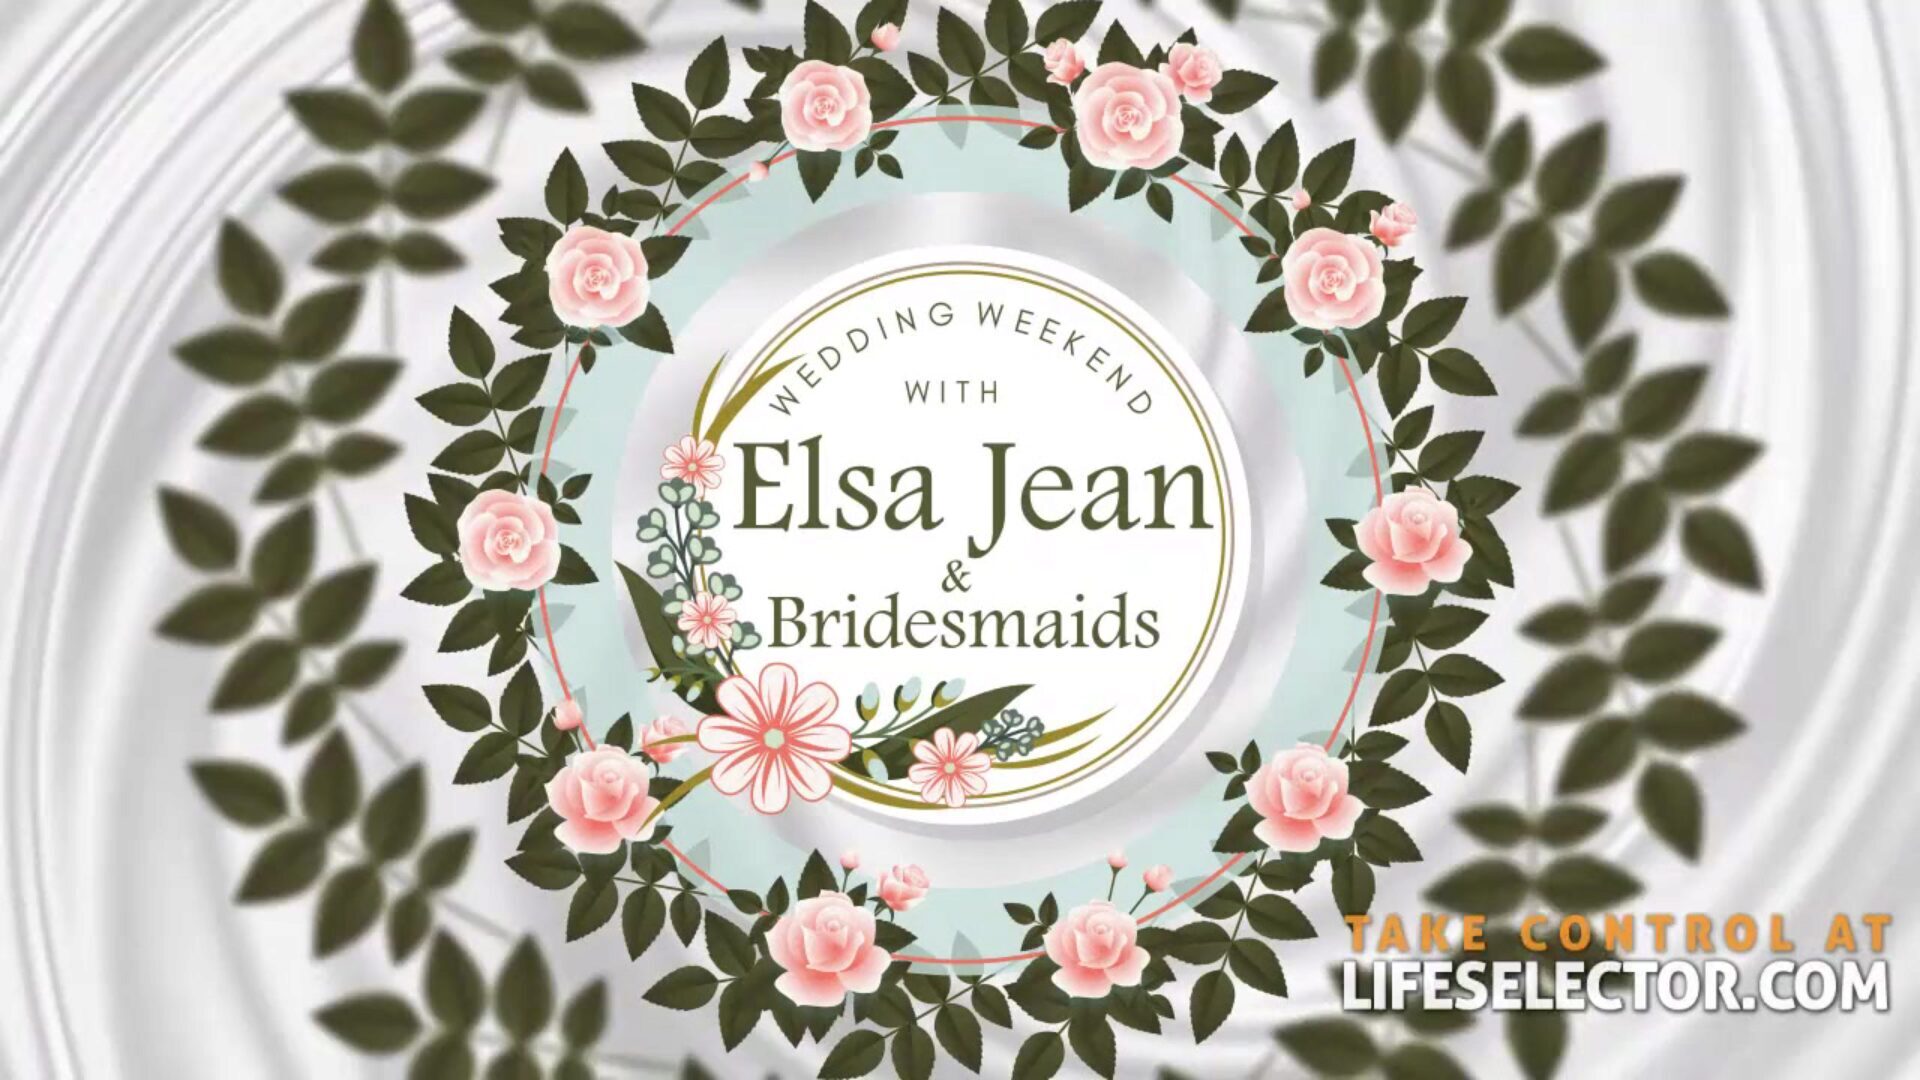 Wedding Weekend with Elsa Jean & Bridesmaids